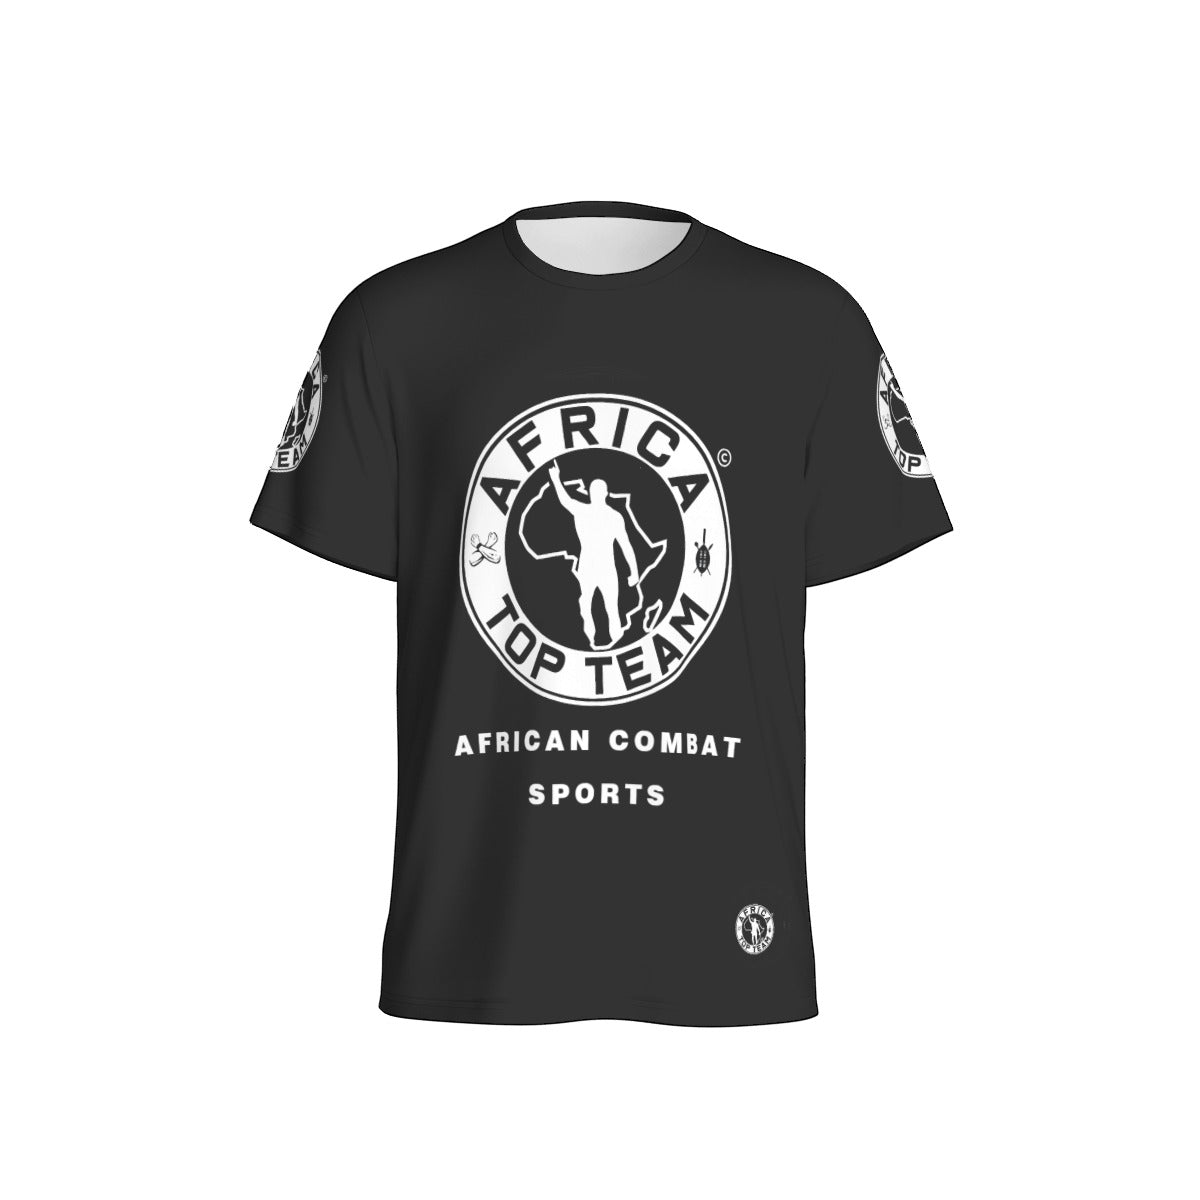 Africa Top Team Black T-Shirt